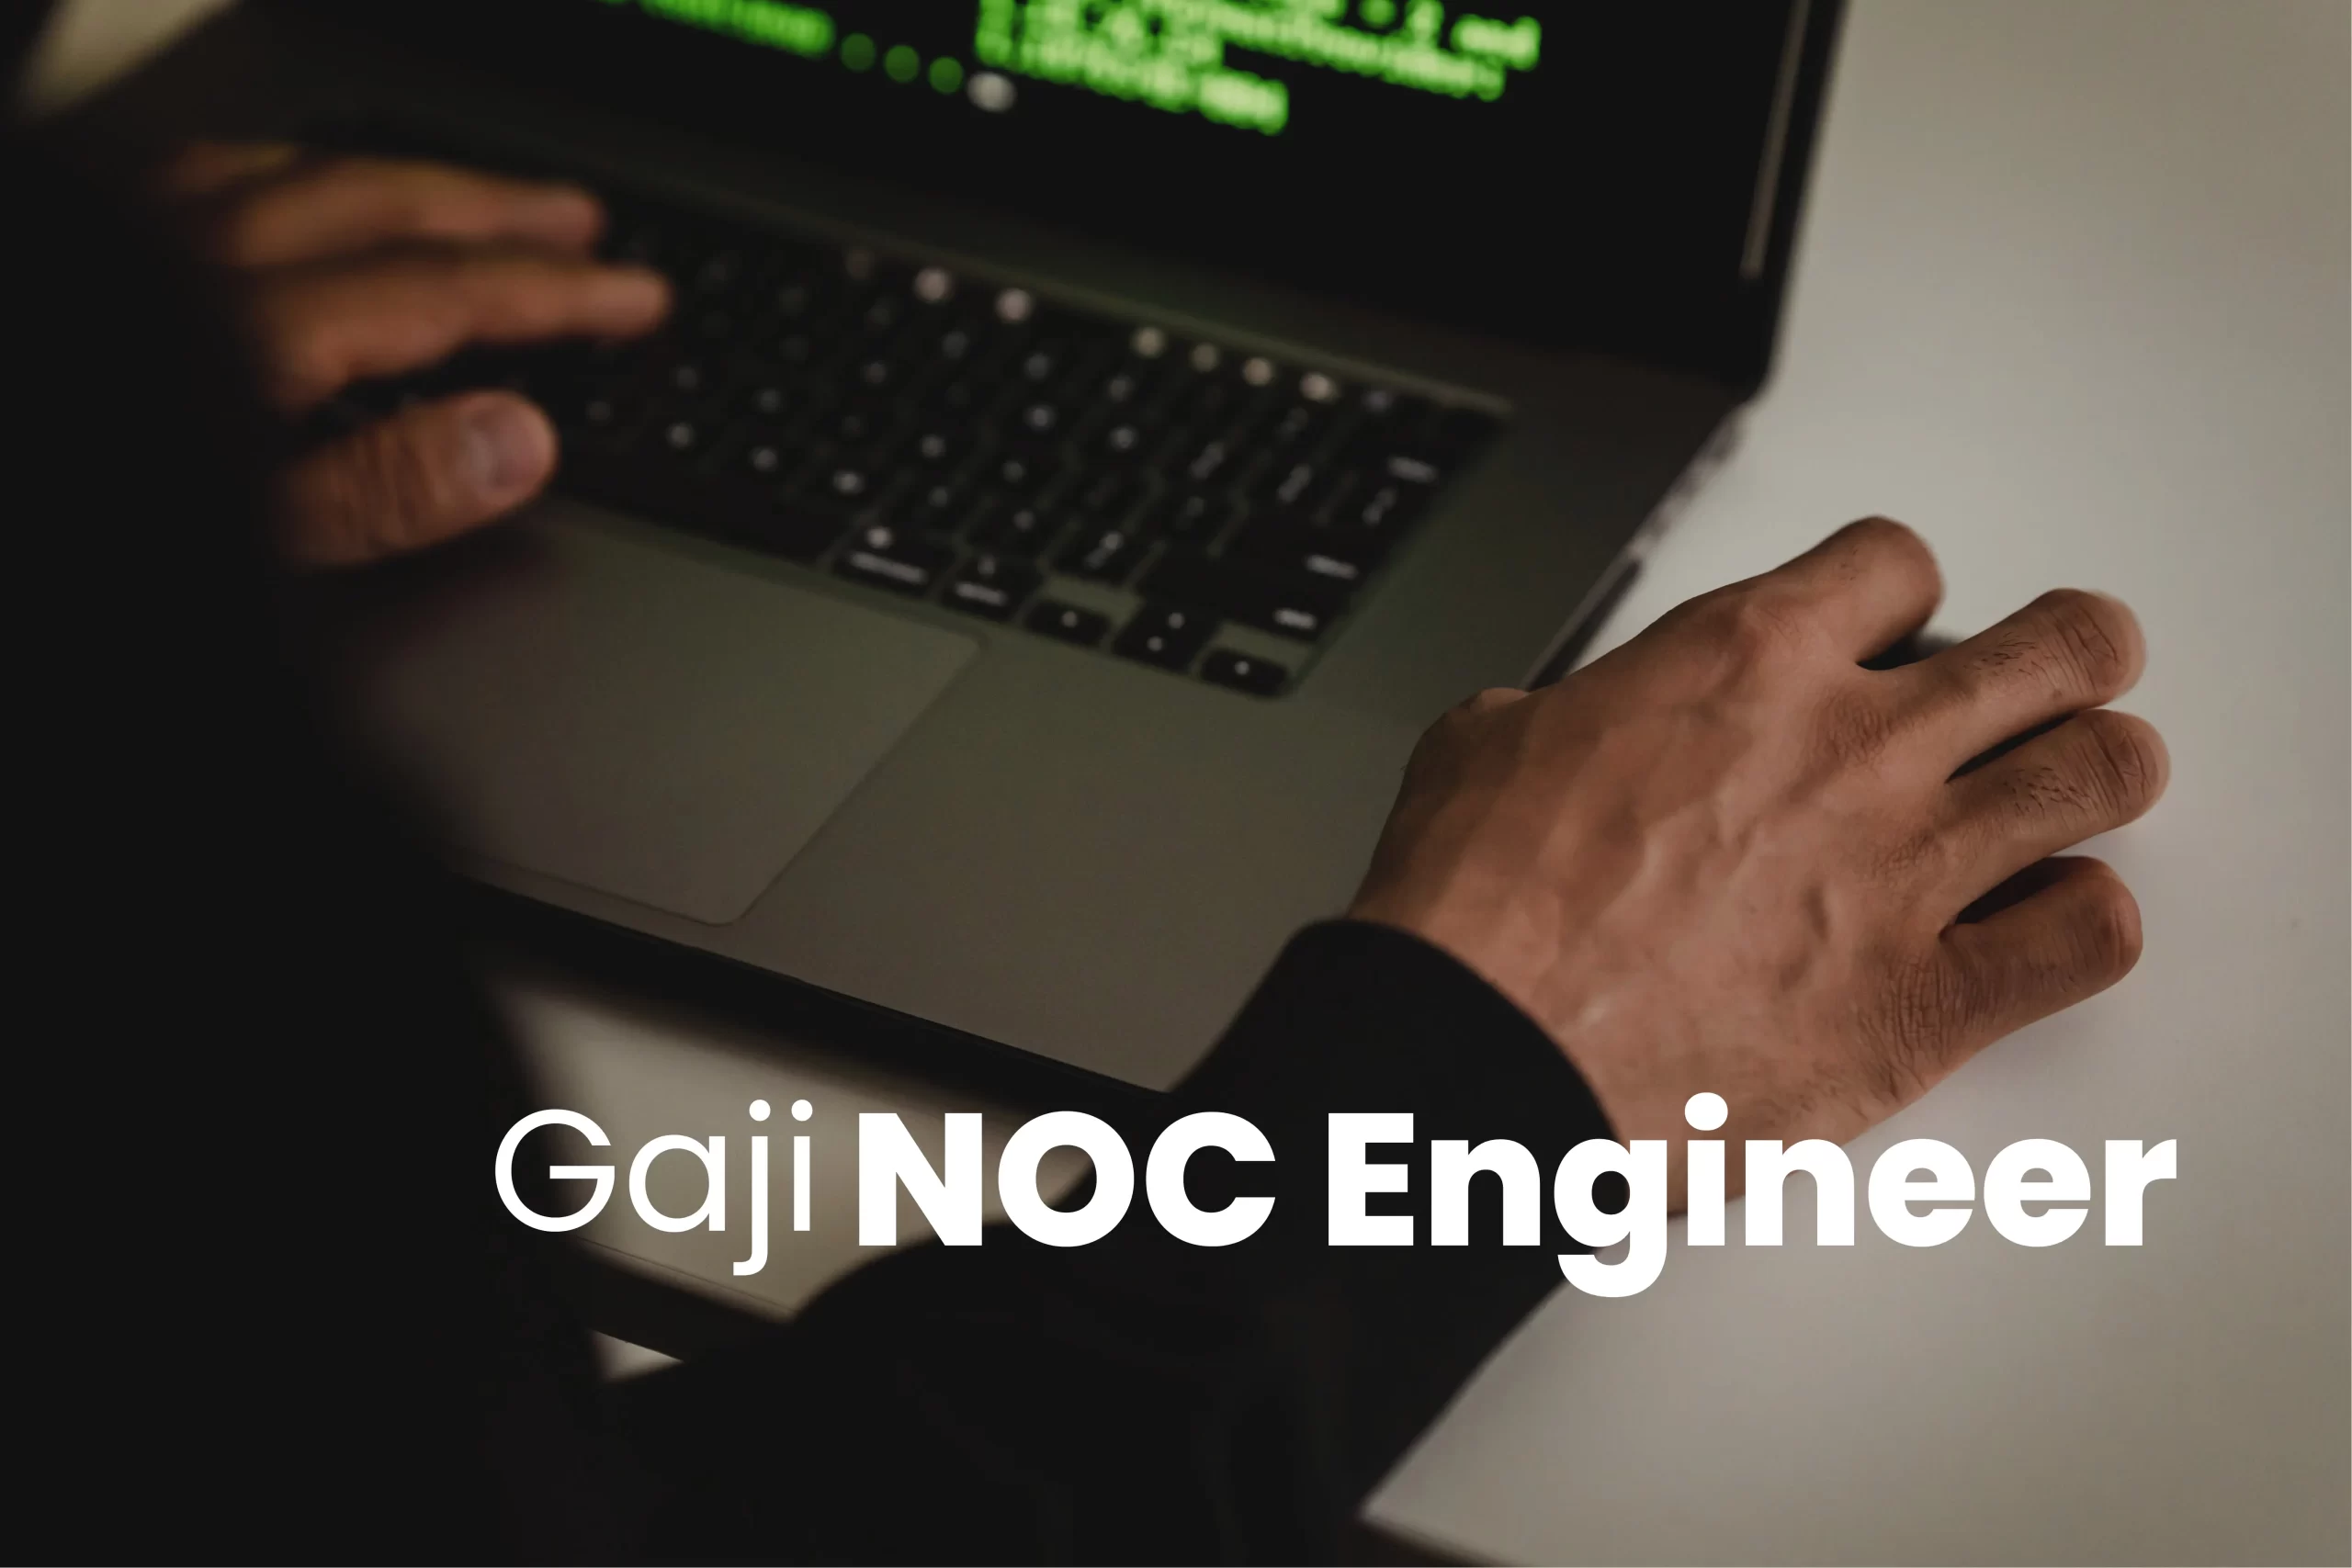 Gaji NOC Engineer